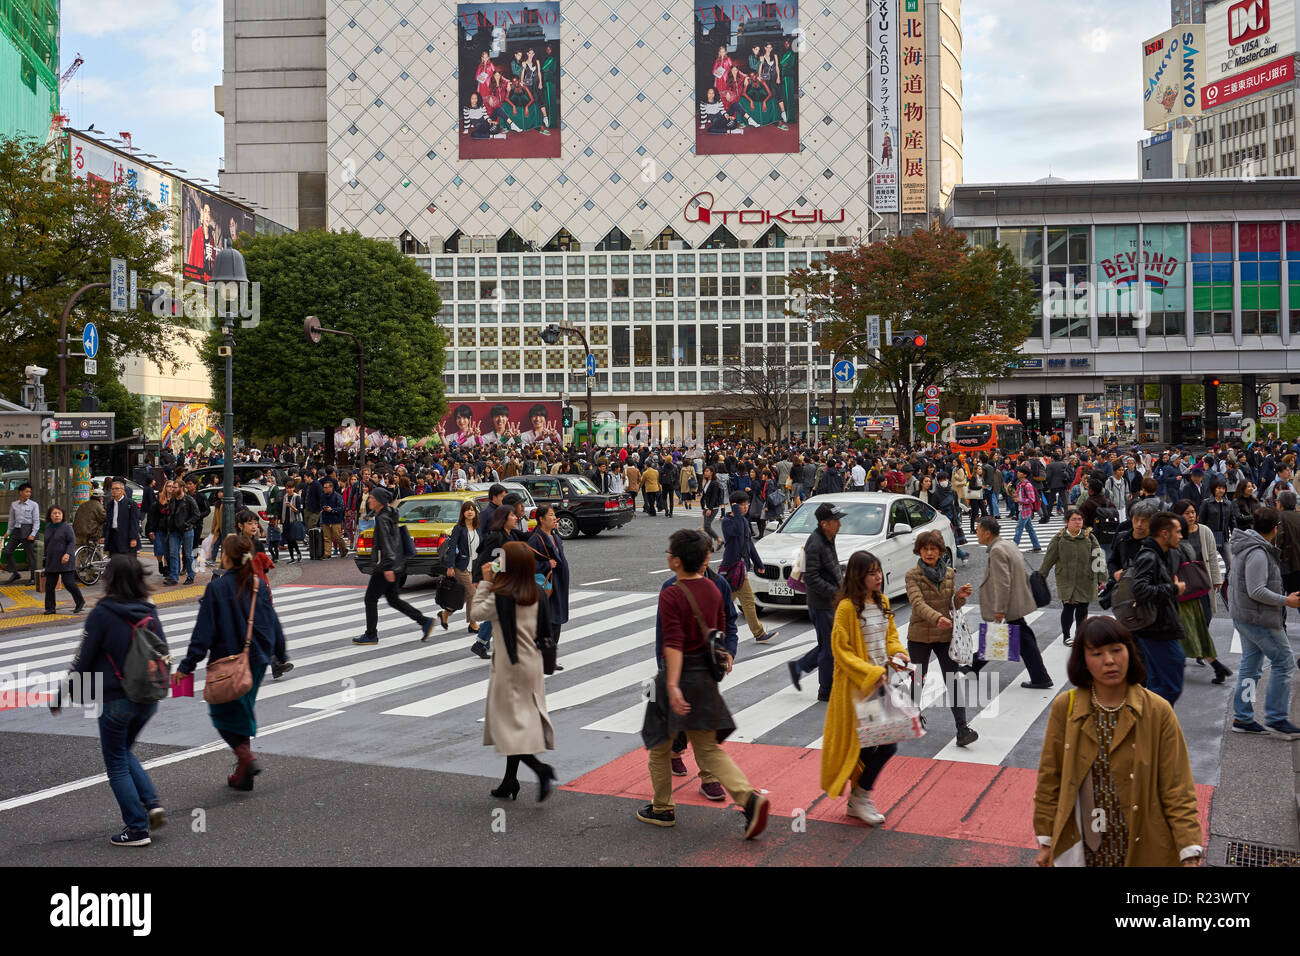 La foule marche sur le croisement de Shibuya, Tokyo, Japon, Asie Banque D'Images